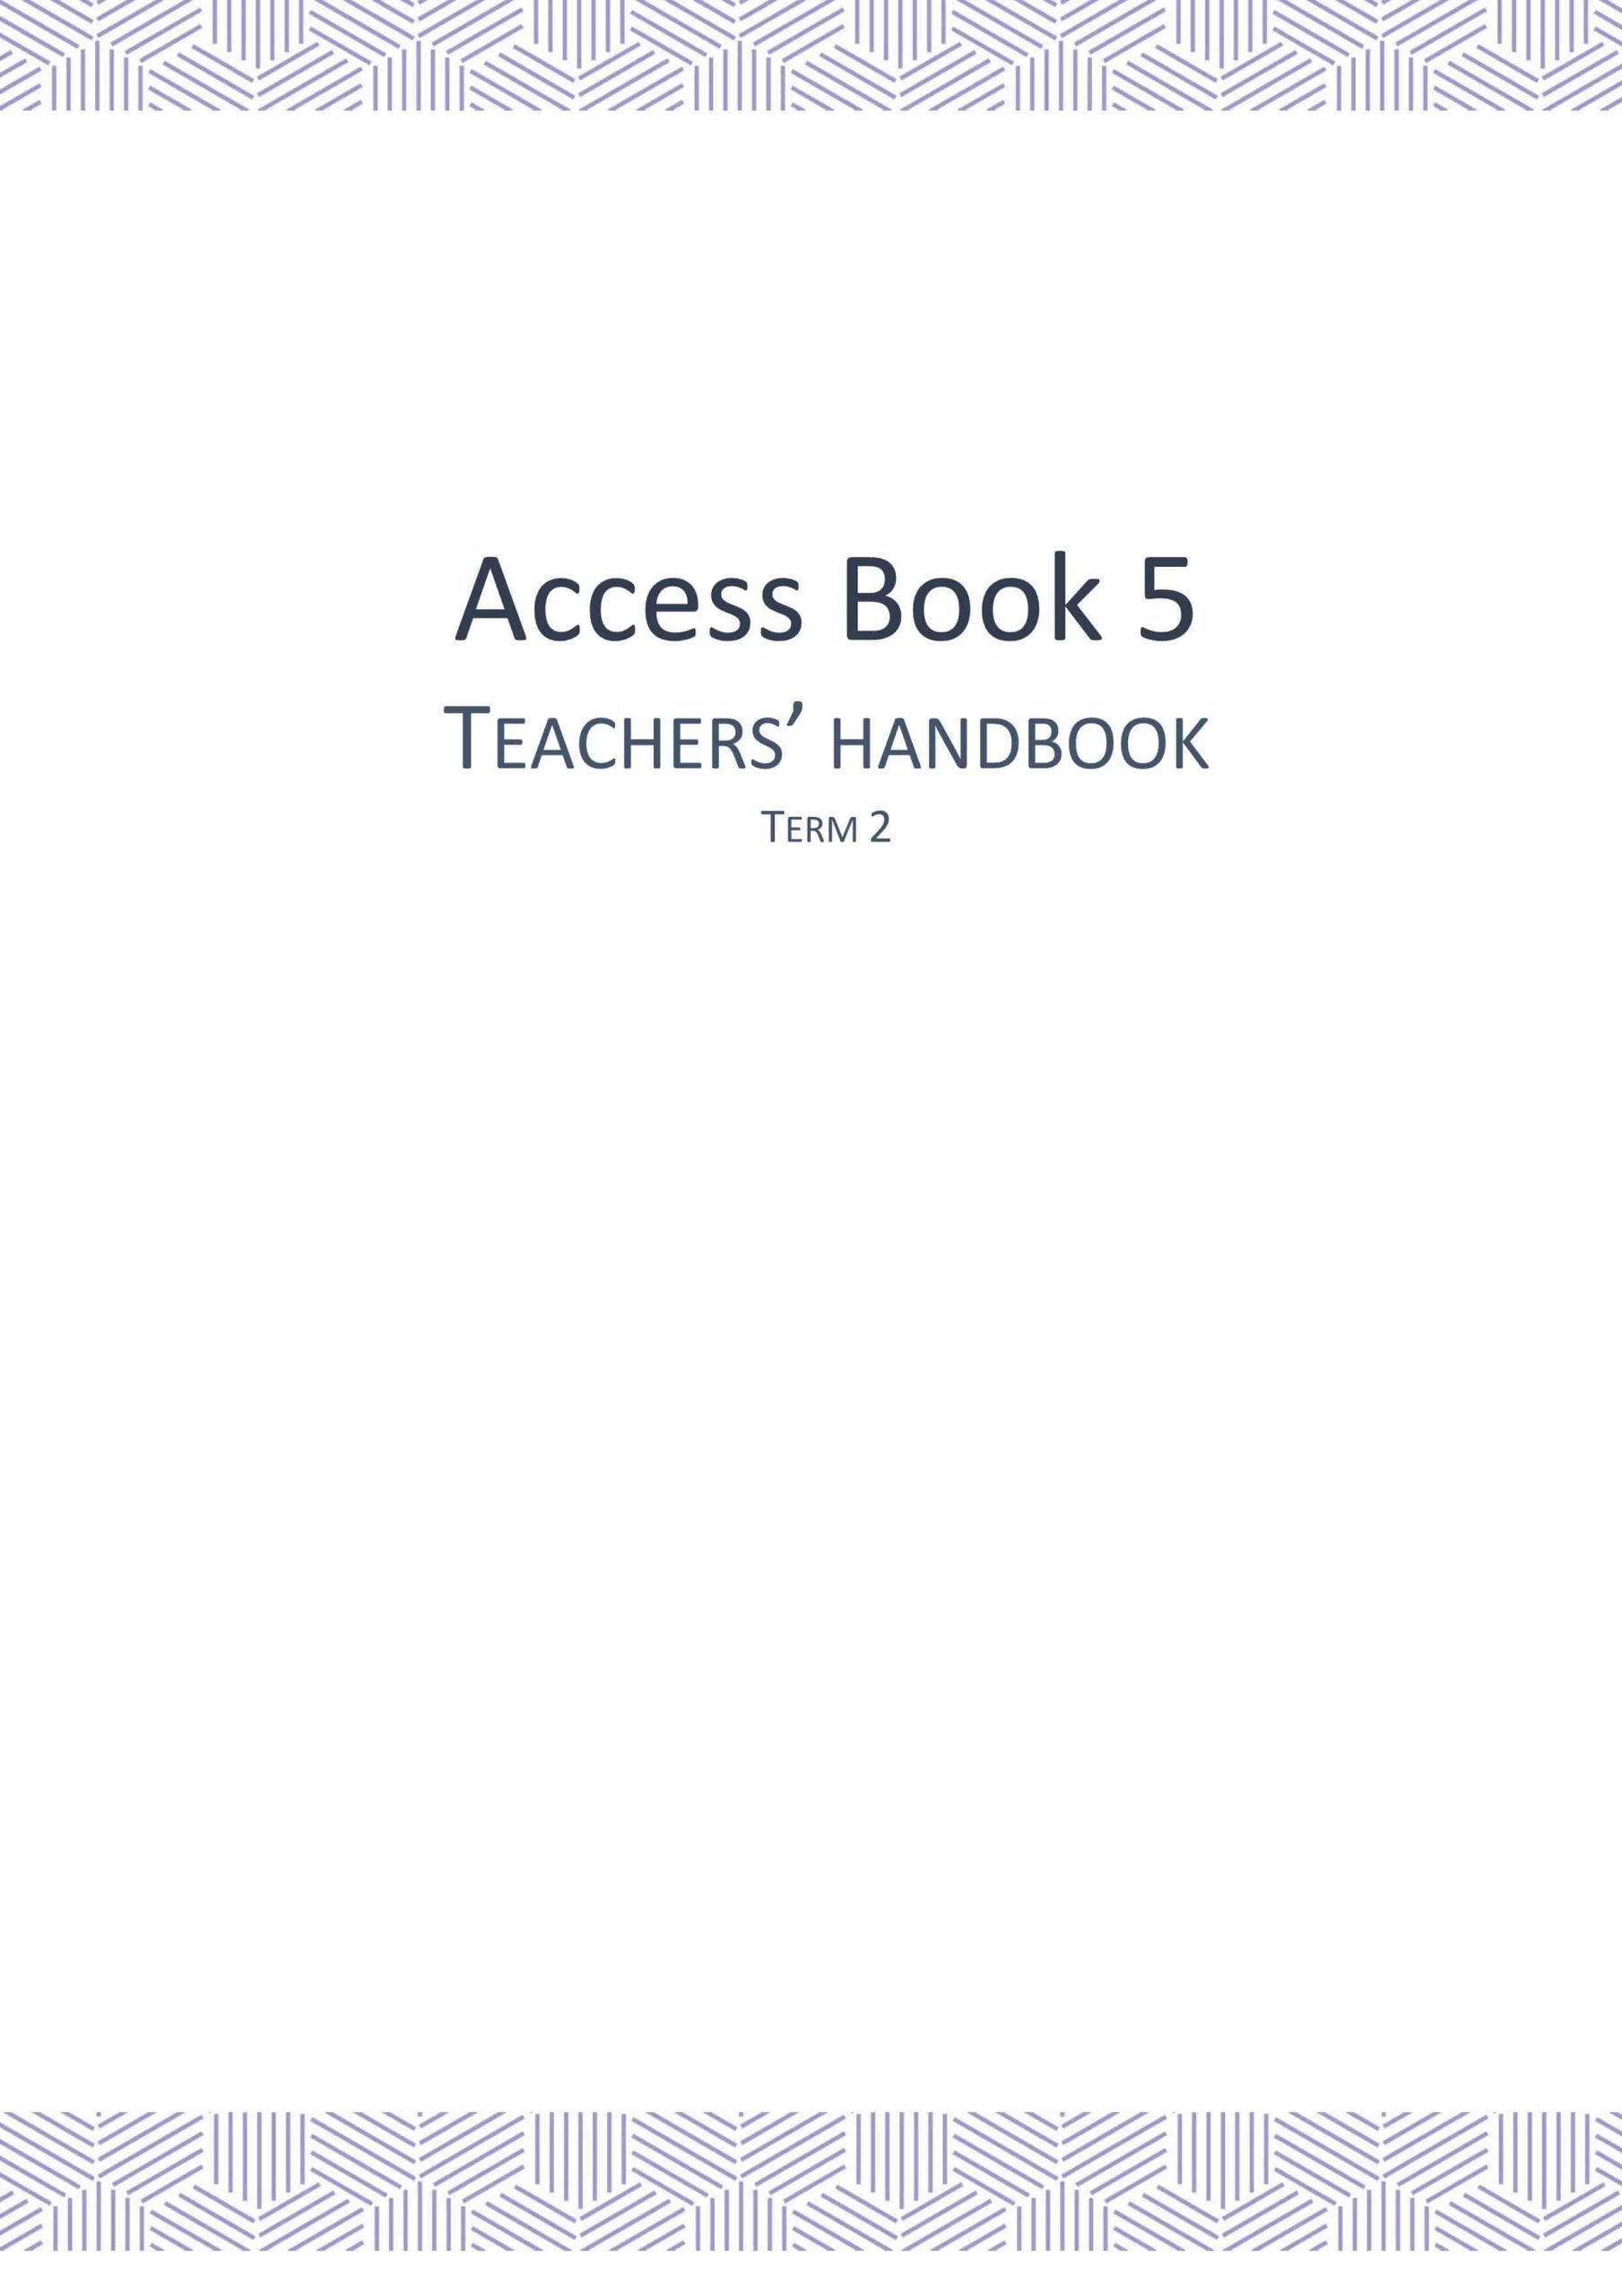 دليل المعلم Access Book الفصل الدراسي الثاني الصف الخامس مادة اللغة الانجليزية 